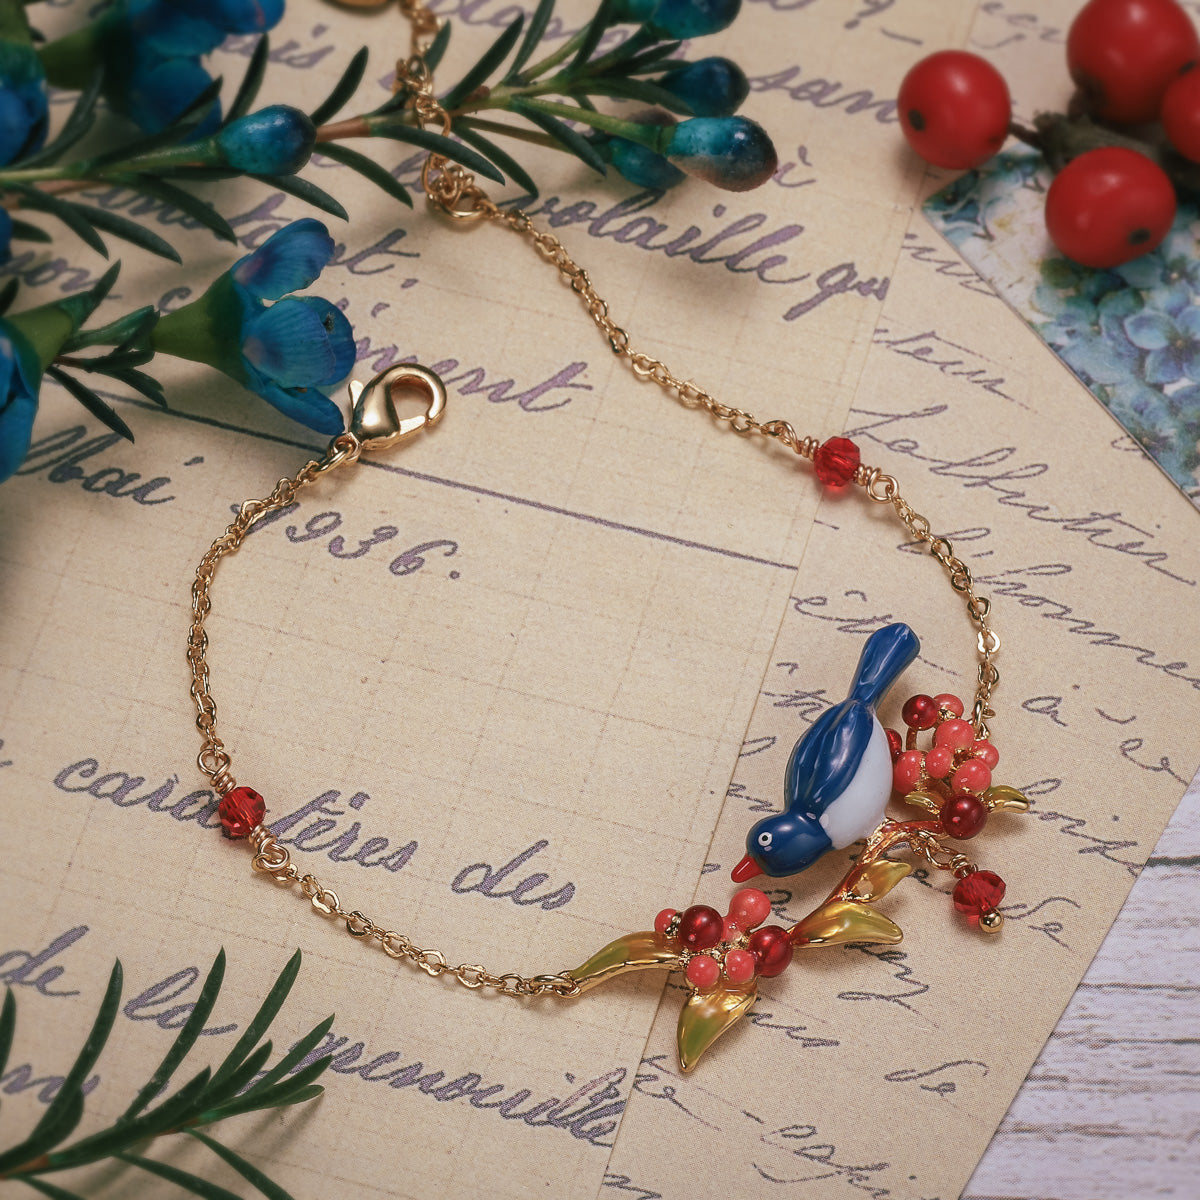 pair of lovebirds beads bracelet